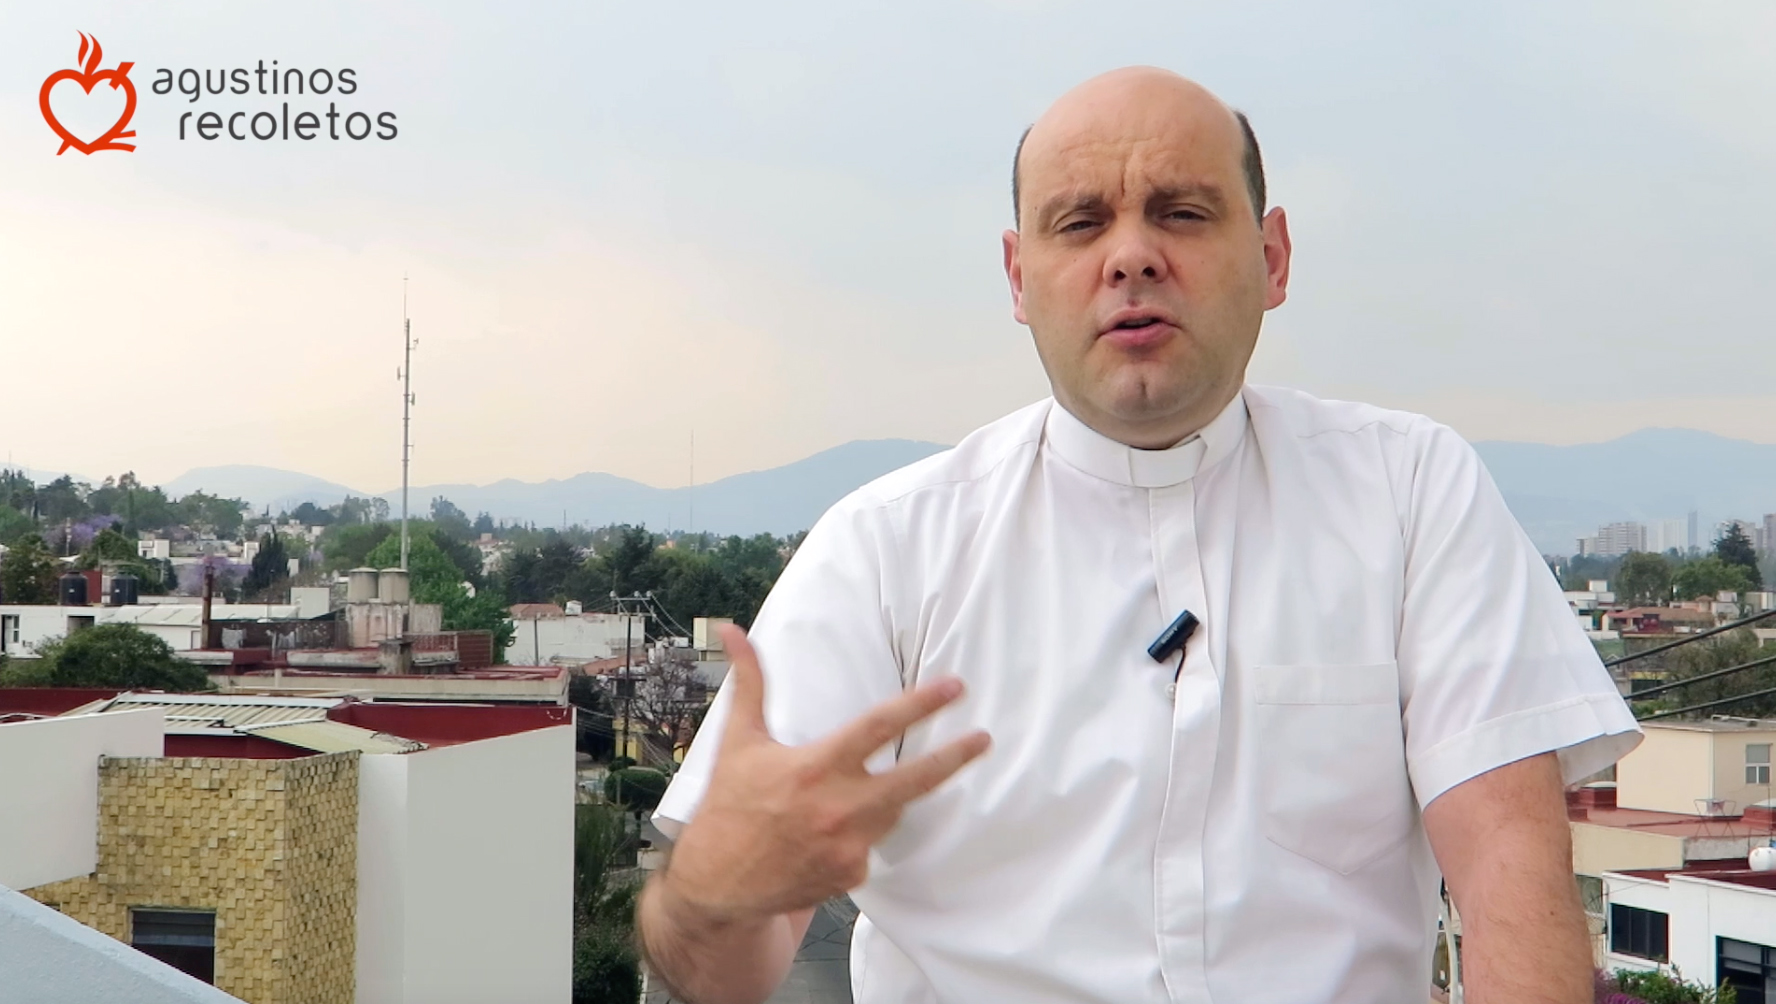 Javier Acero, vigário do México e Costa Rica do OAR: “A chave para a Ordem é o trabalho em rede”